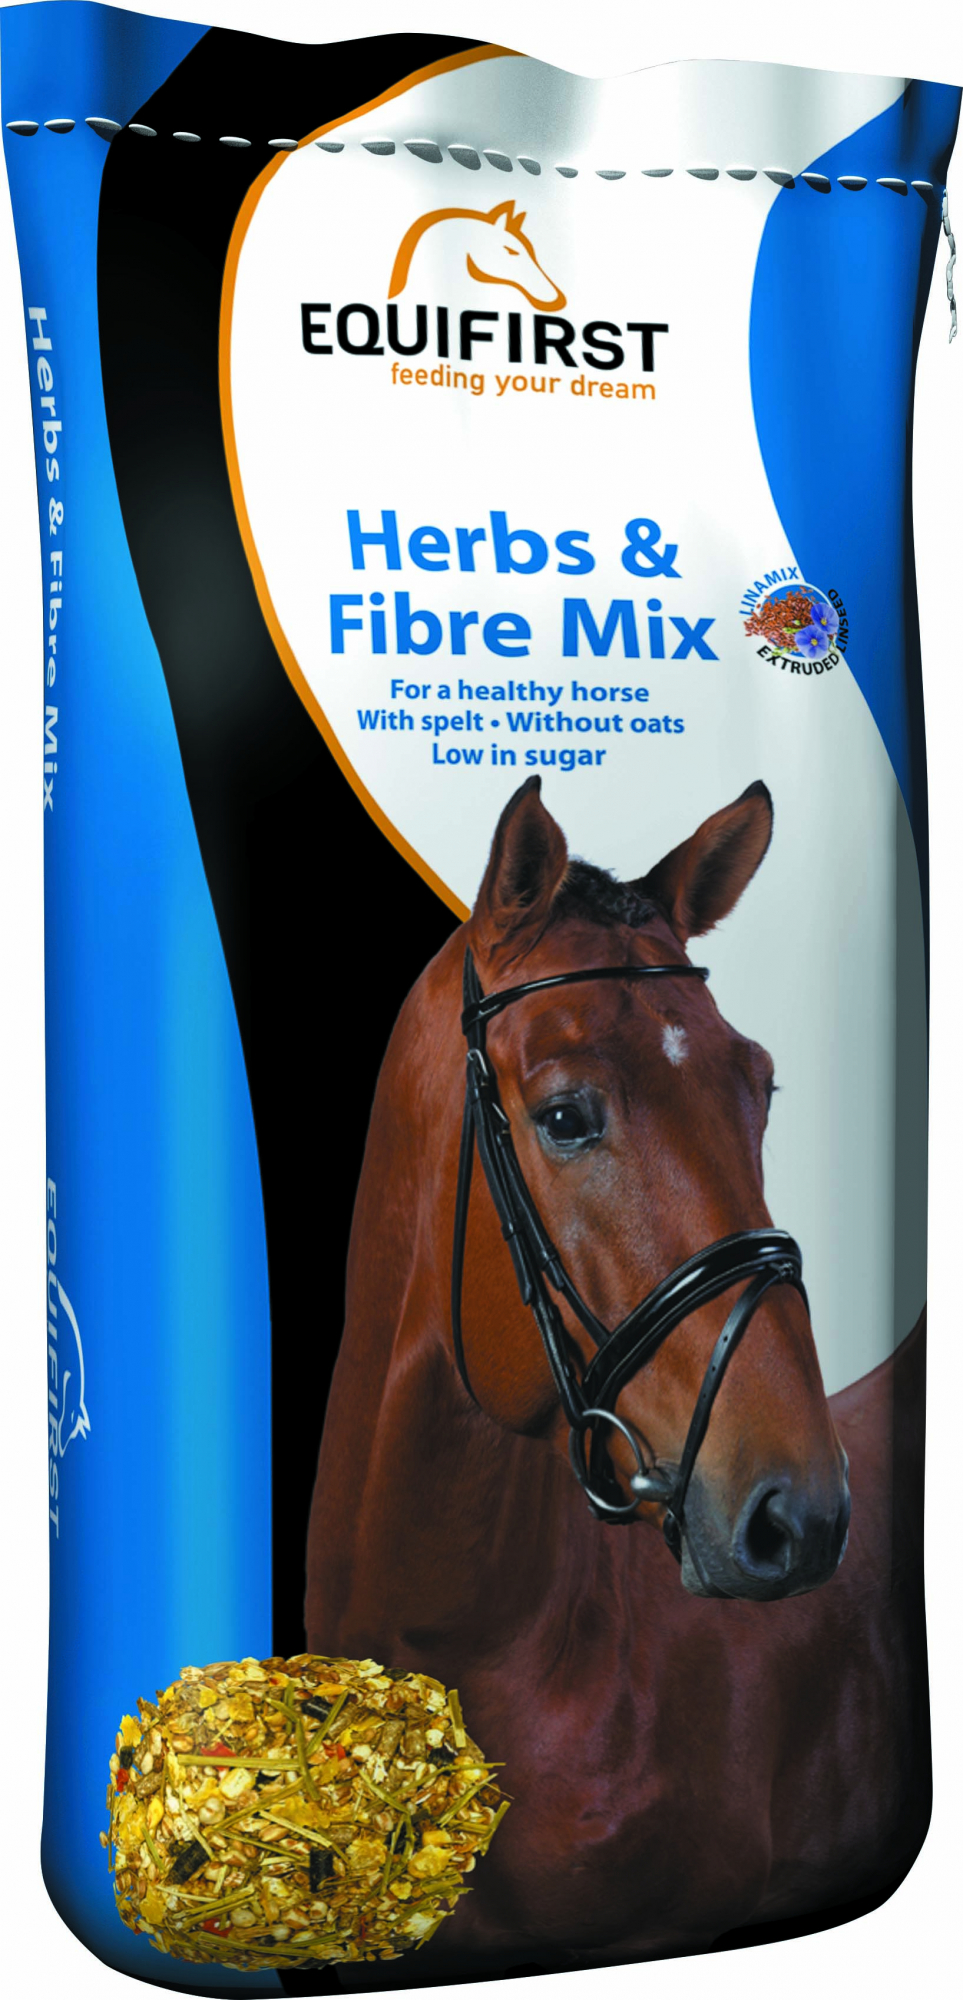 Equifirst Herbs & Fibre Mix mistura sem aveia para cavalos